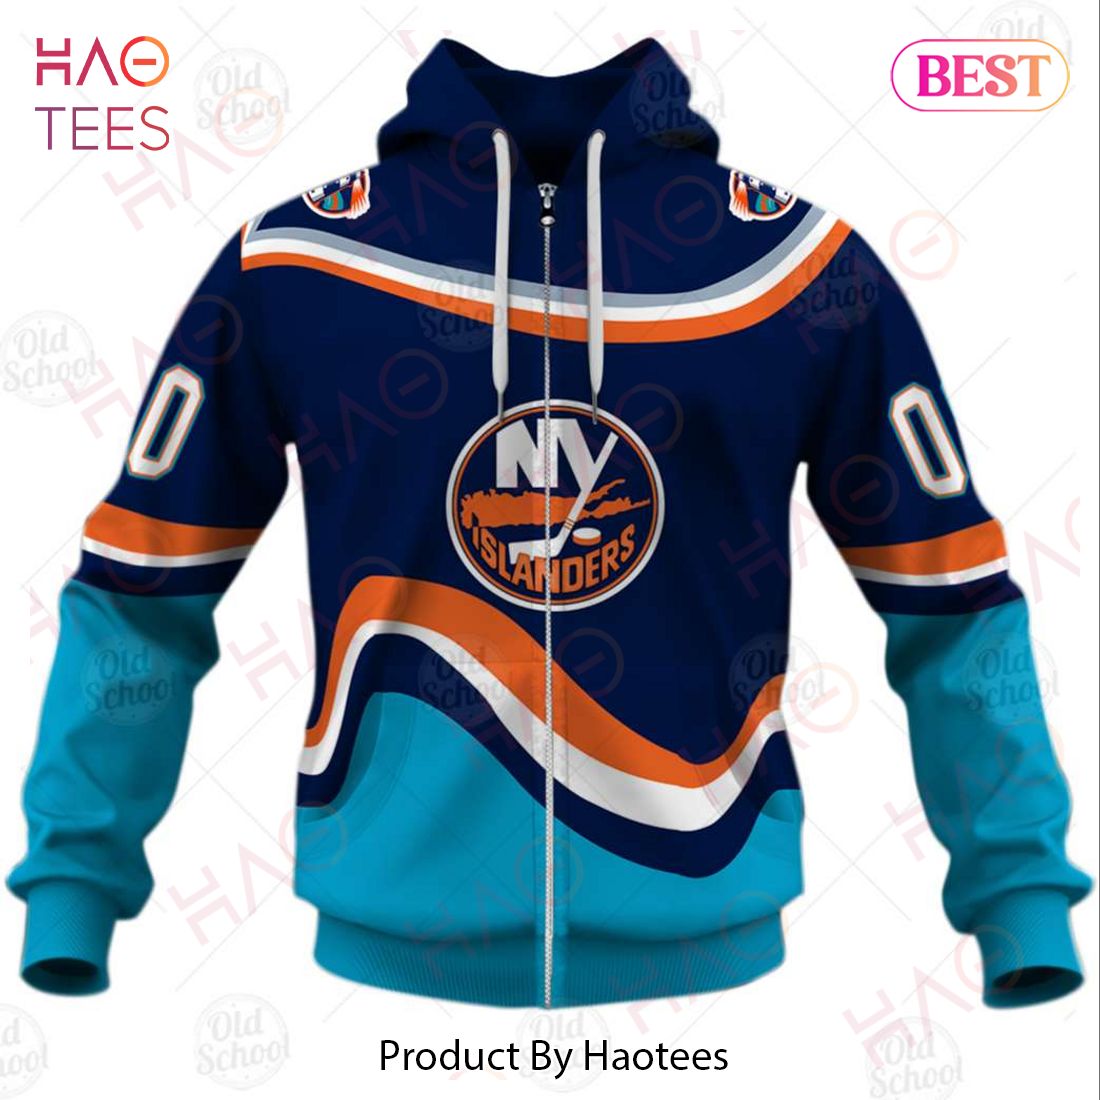 Funny new York Islanders 2023 2024 Season Schedule shirt, hoodie